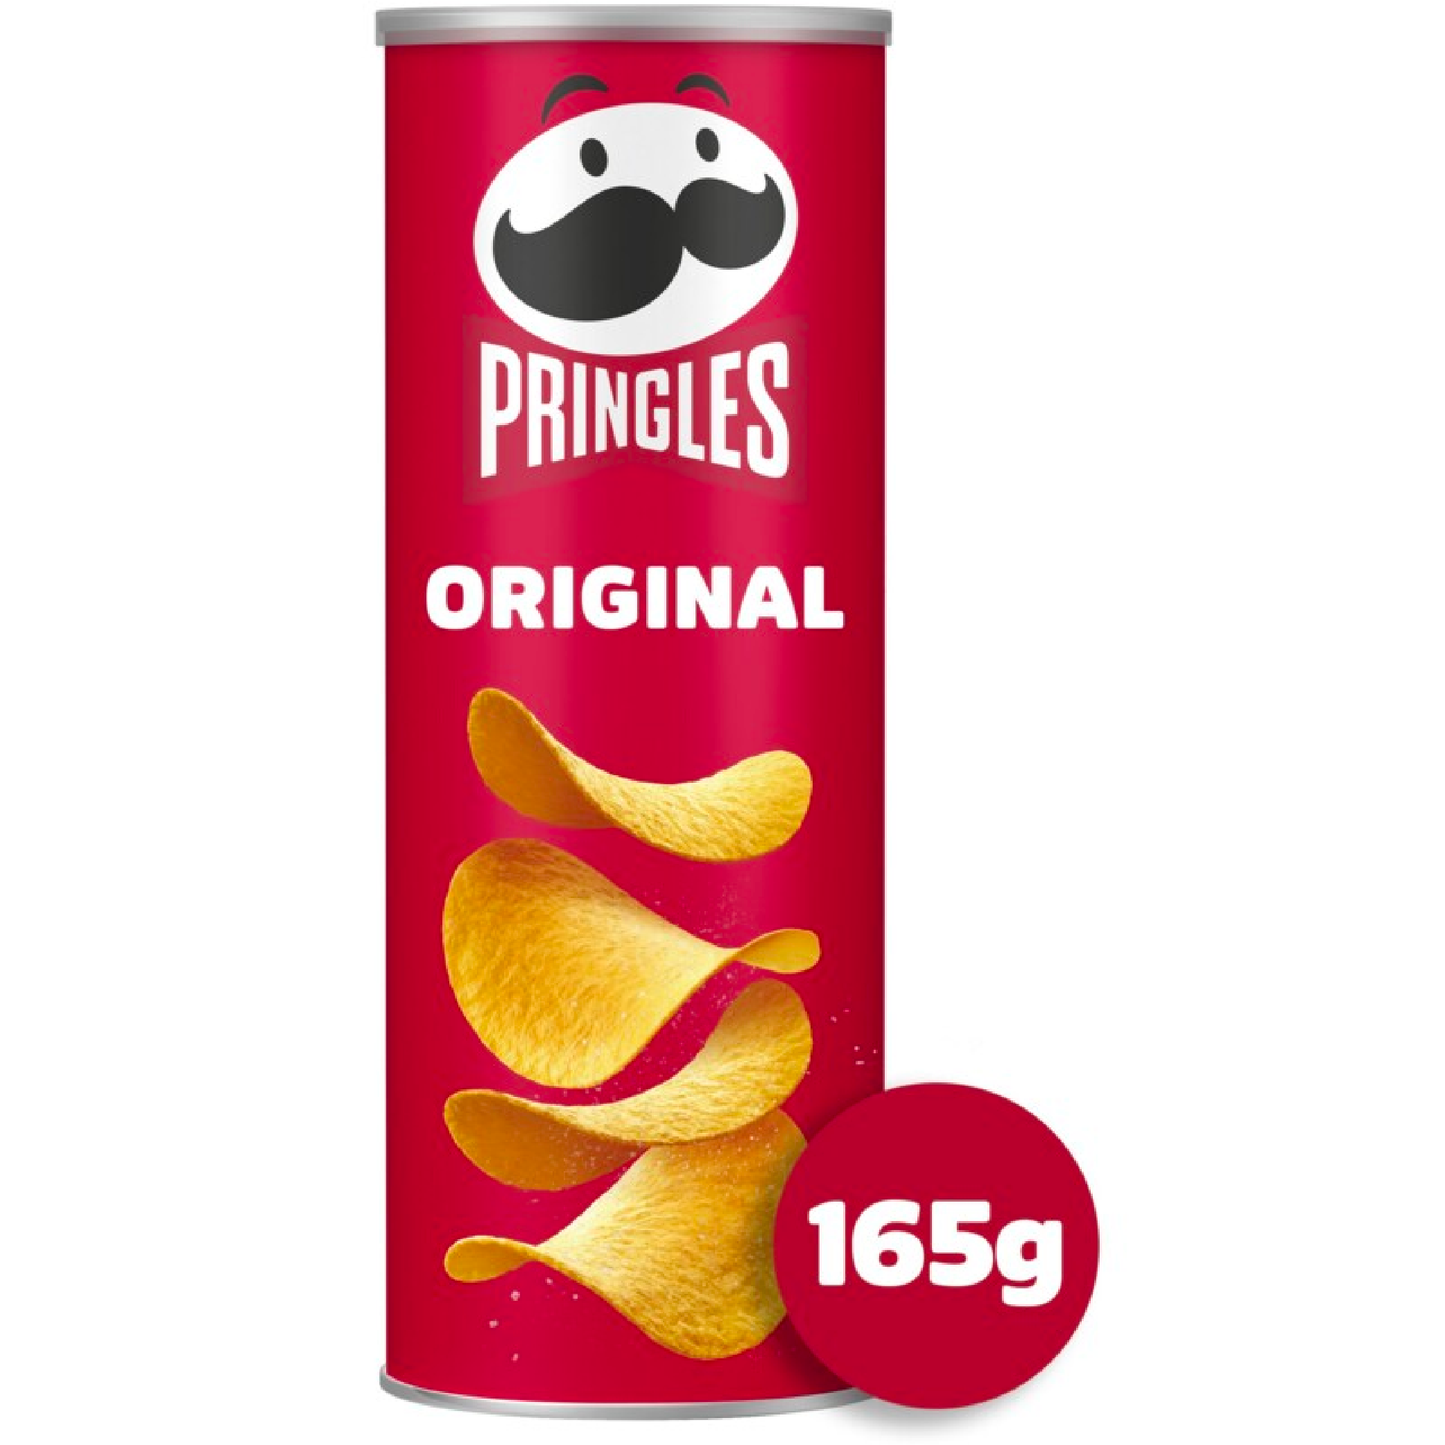 Pringles Original 165g - Snack-It